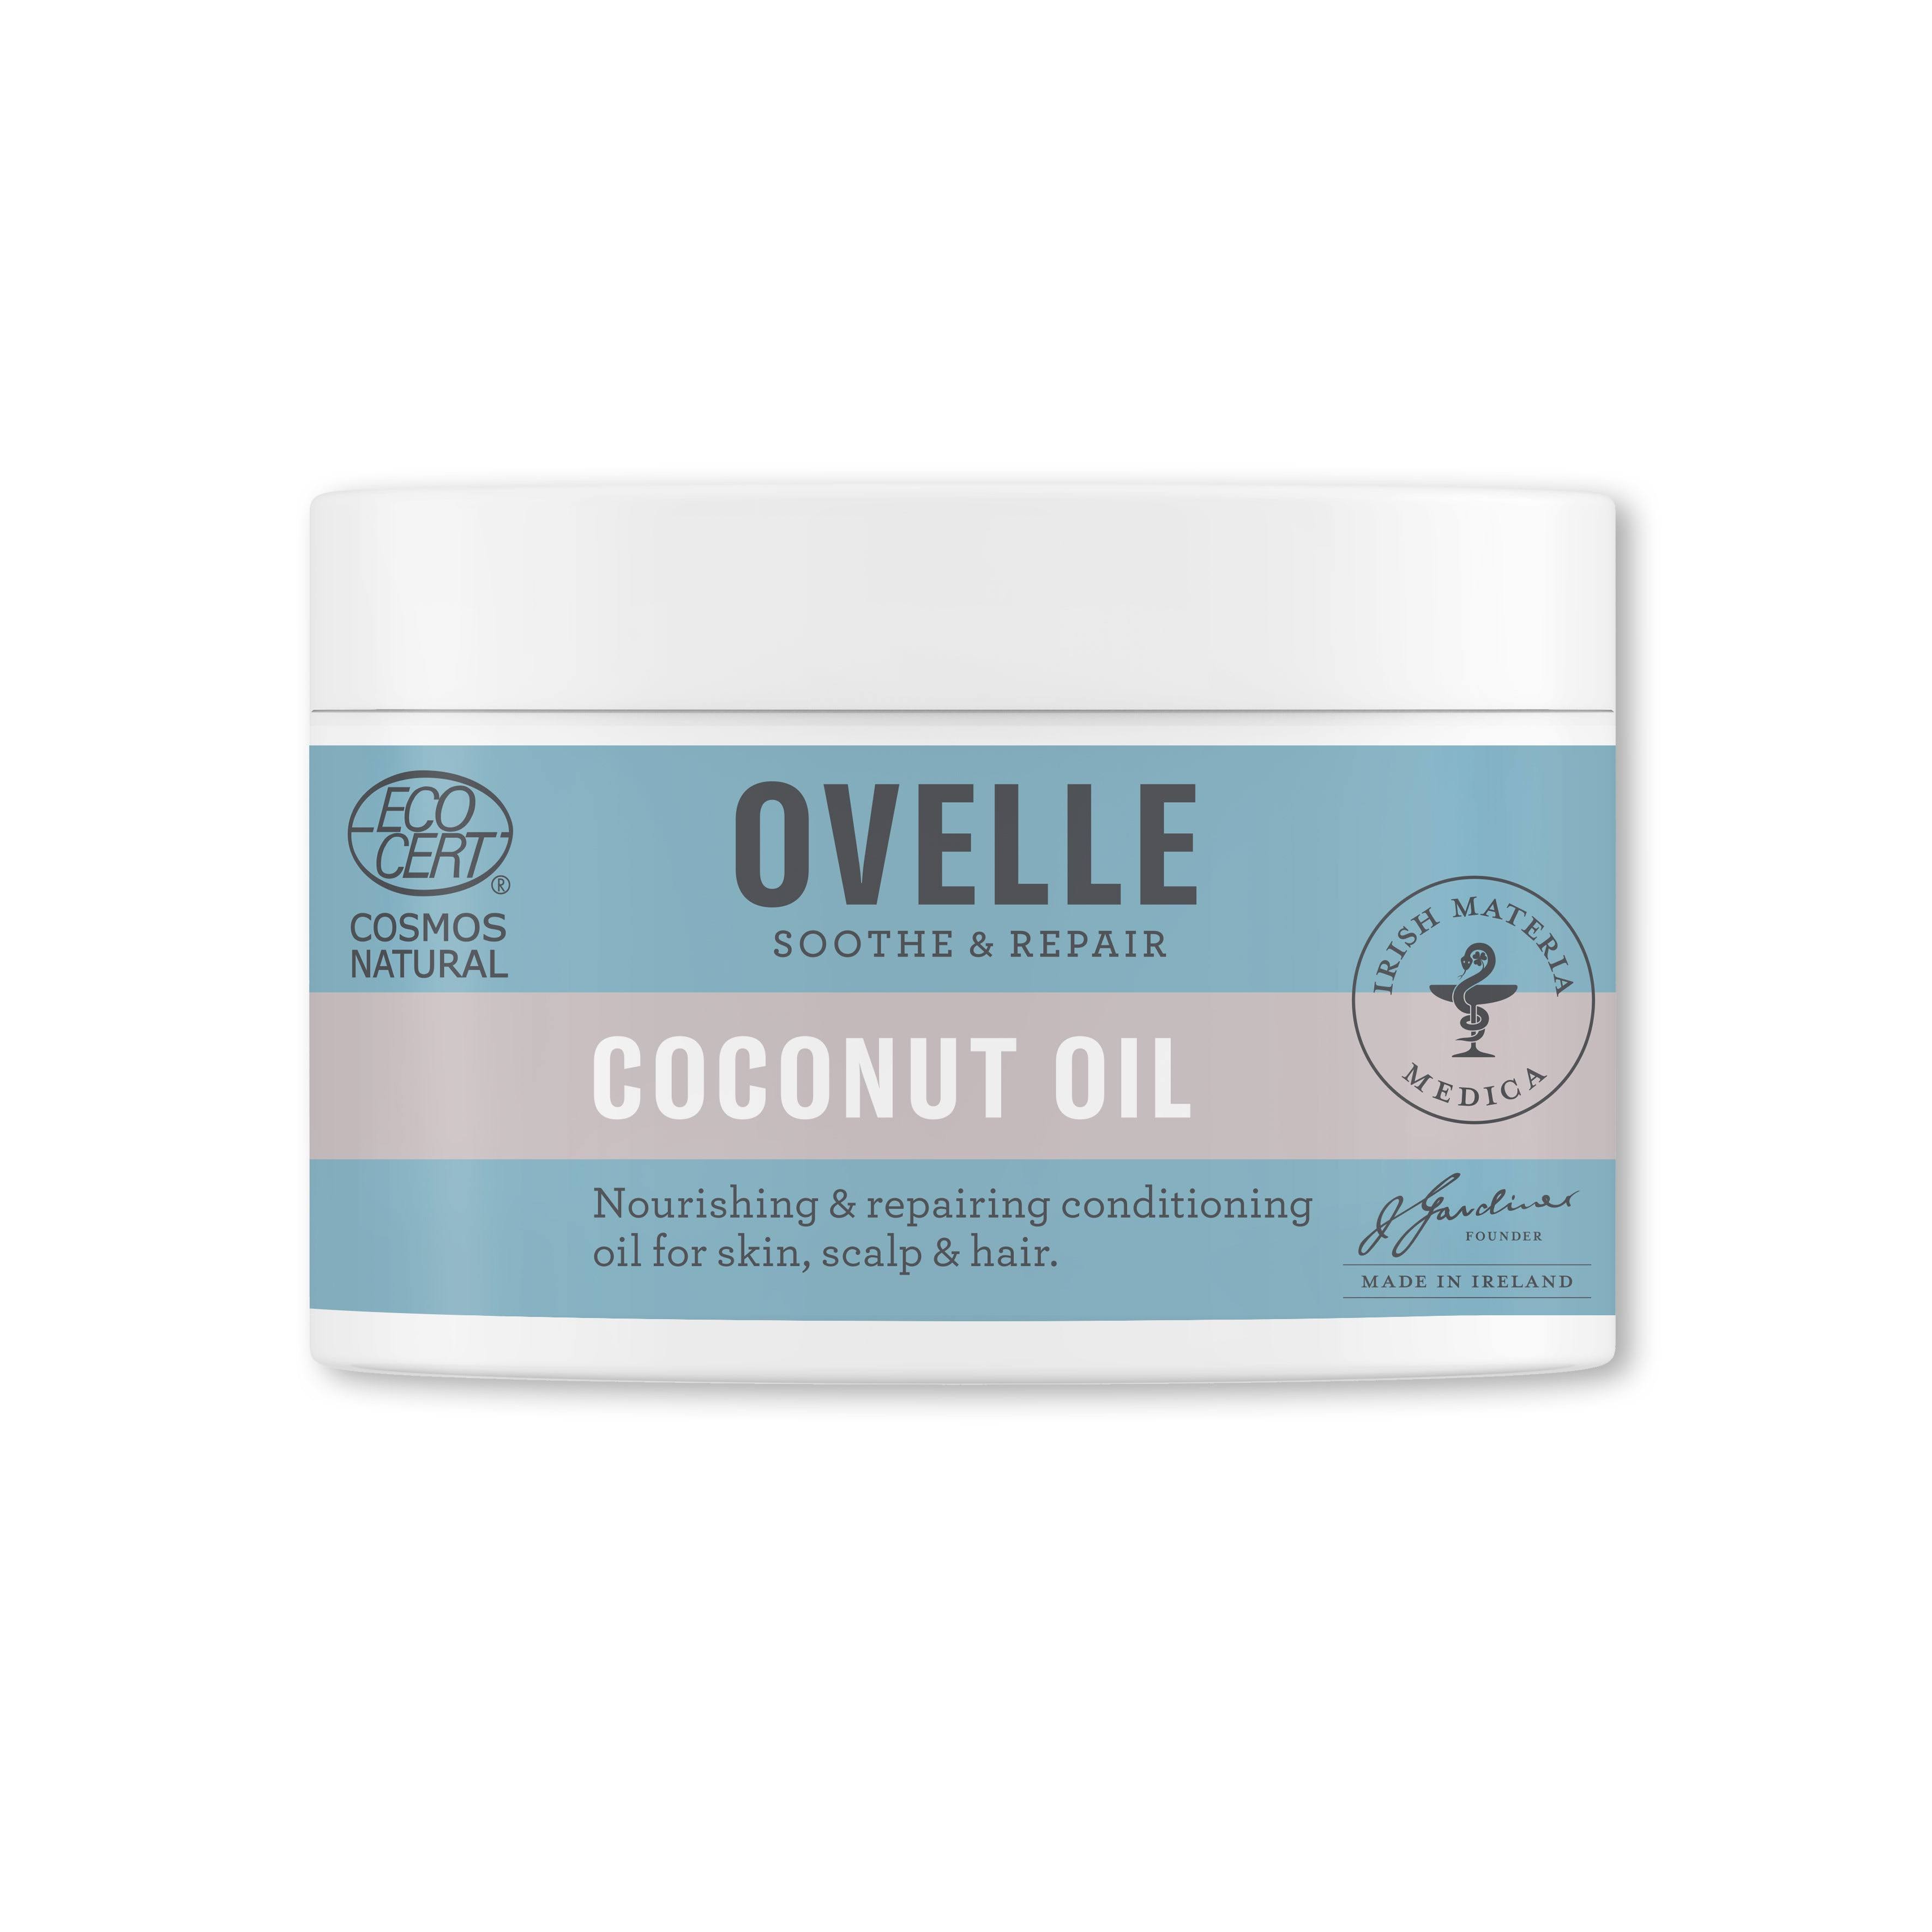 Ovelle Coconut Oil (100g)